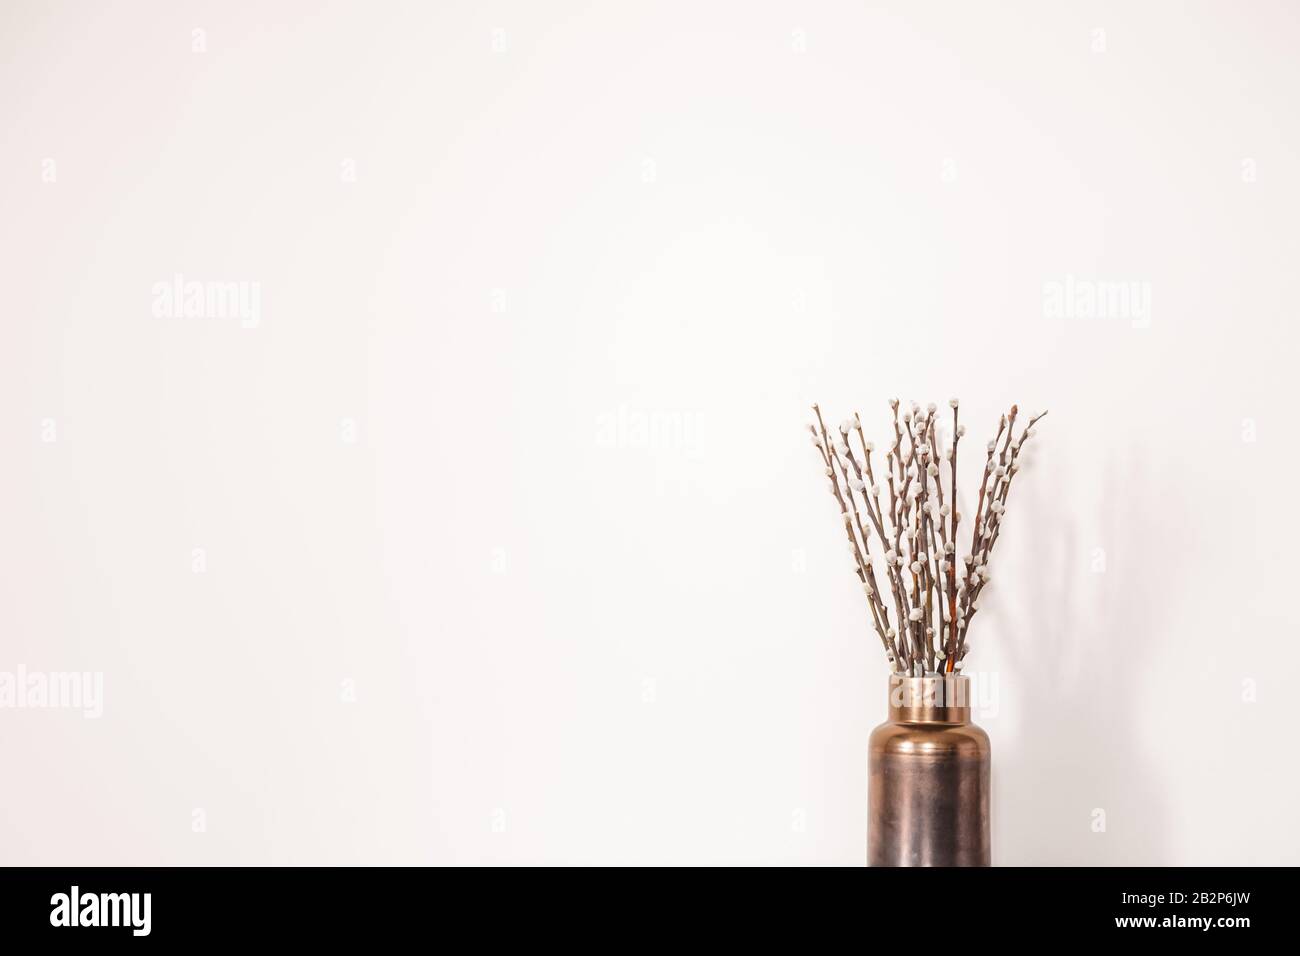 Brindilles avec bourgeons dans un vase contre le mur blanc. Concept du début du printemps, mars, réveil de la nature ou anticipation de la saison chaude Banque D'Images